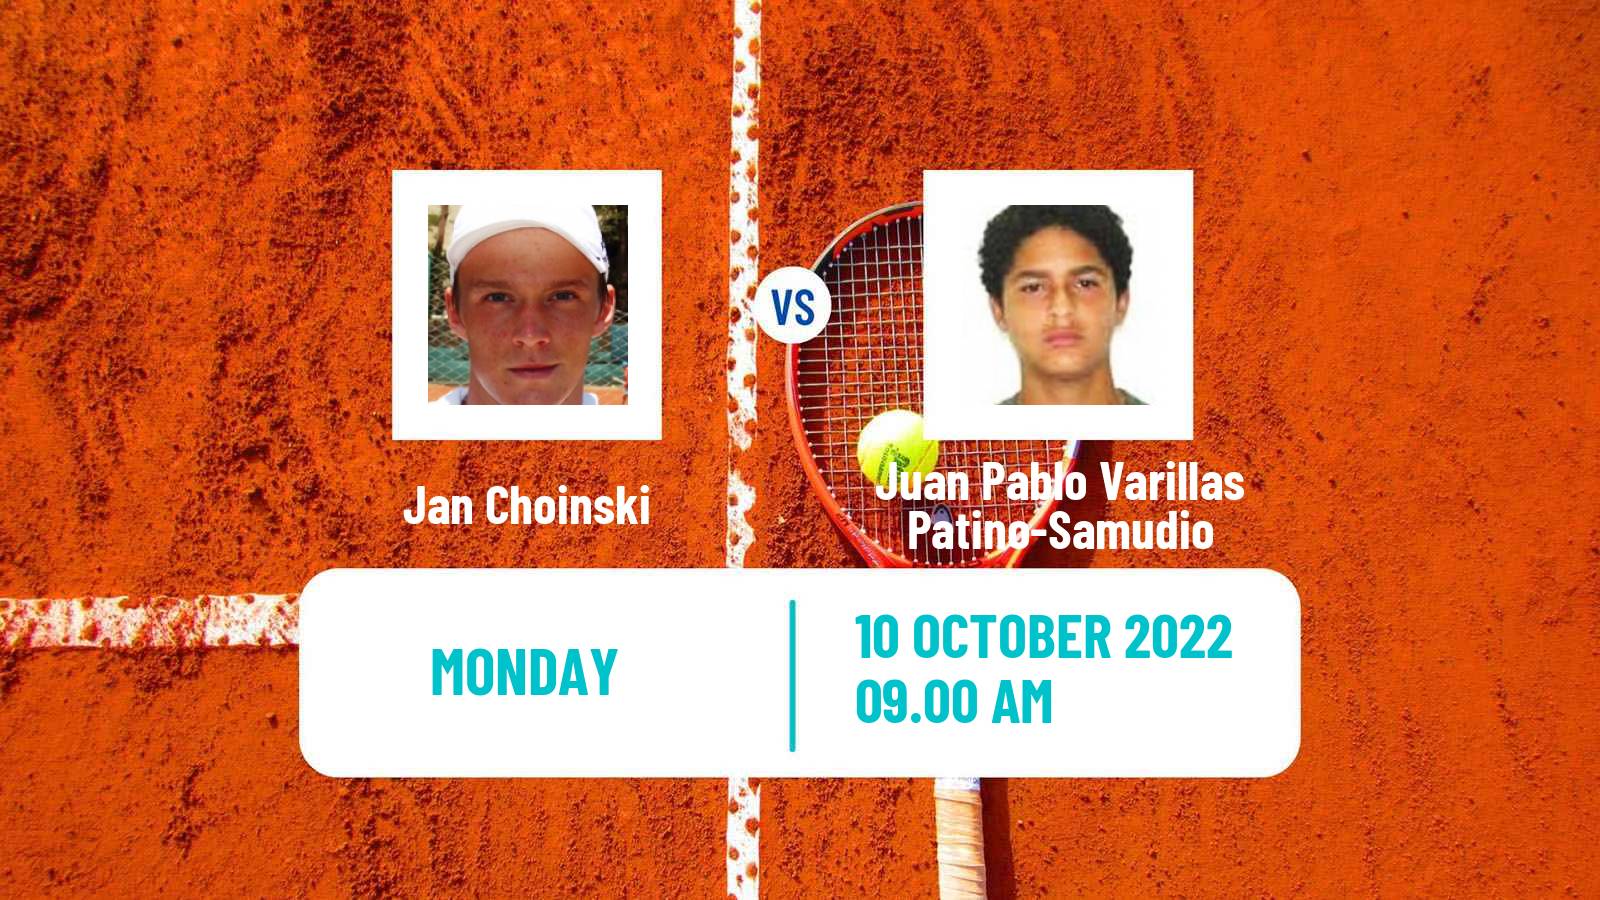 Tennis ATP Challenger Jan Choinski - Juan Pablo Varillas Patino-Samudio